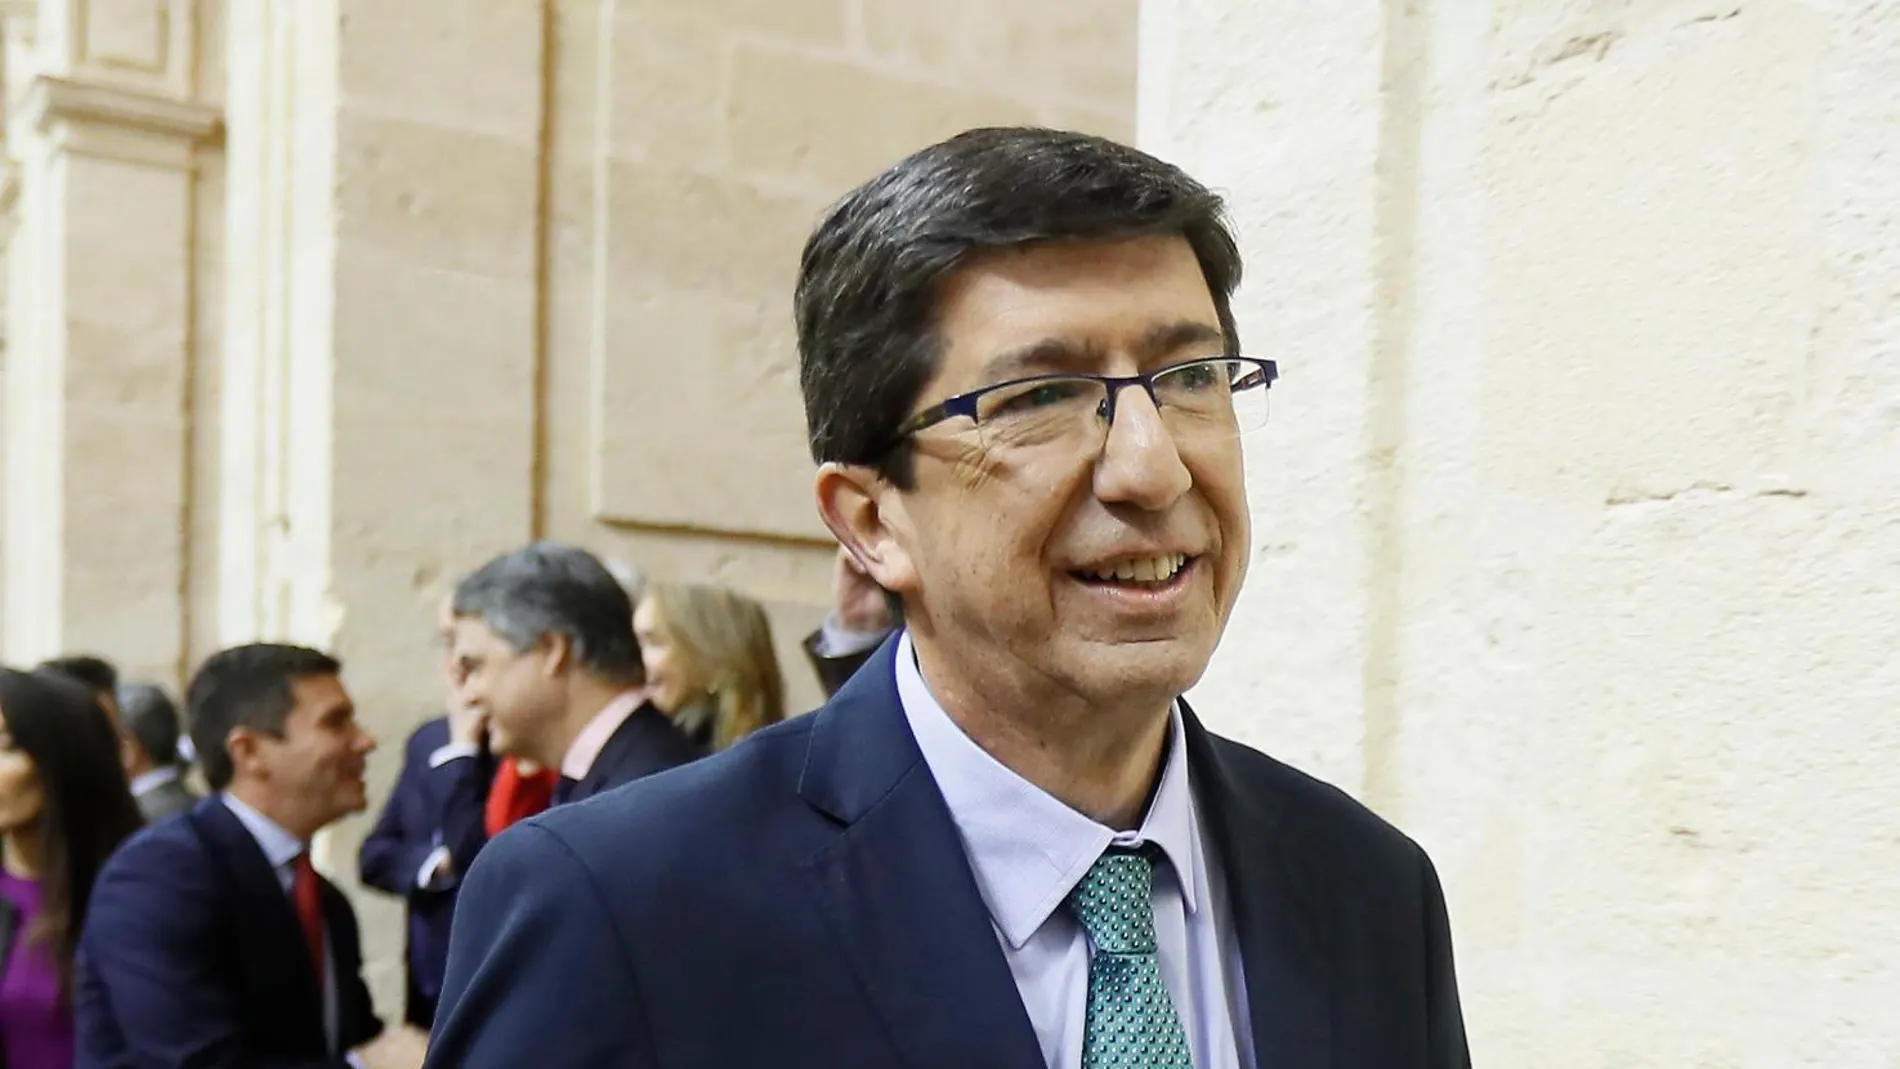 El líder andaluz de Ciudadanos, Juan Marín, en el Parlamento andaluz